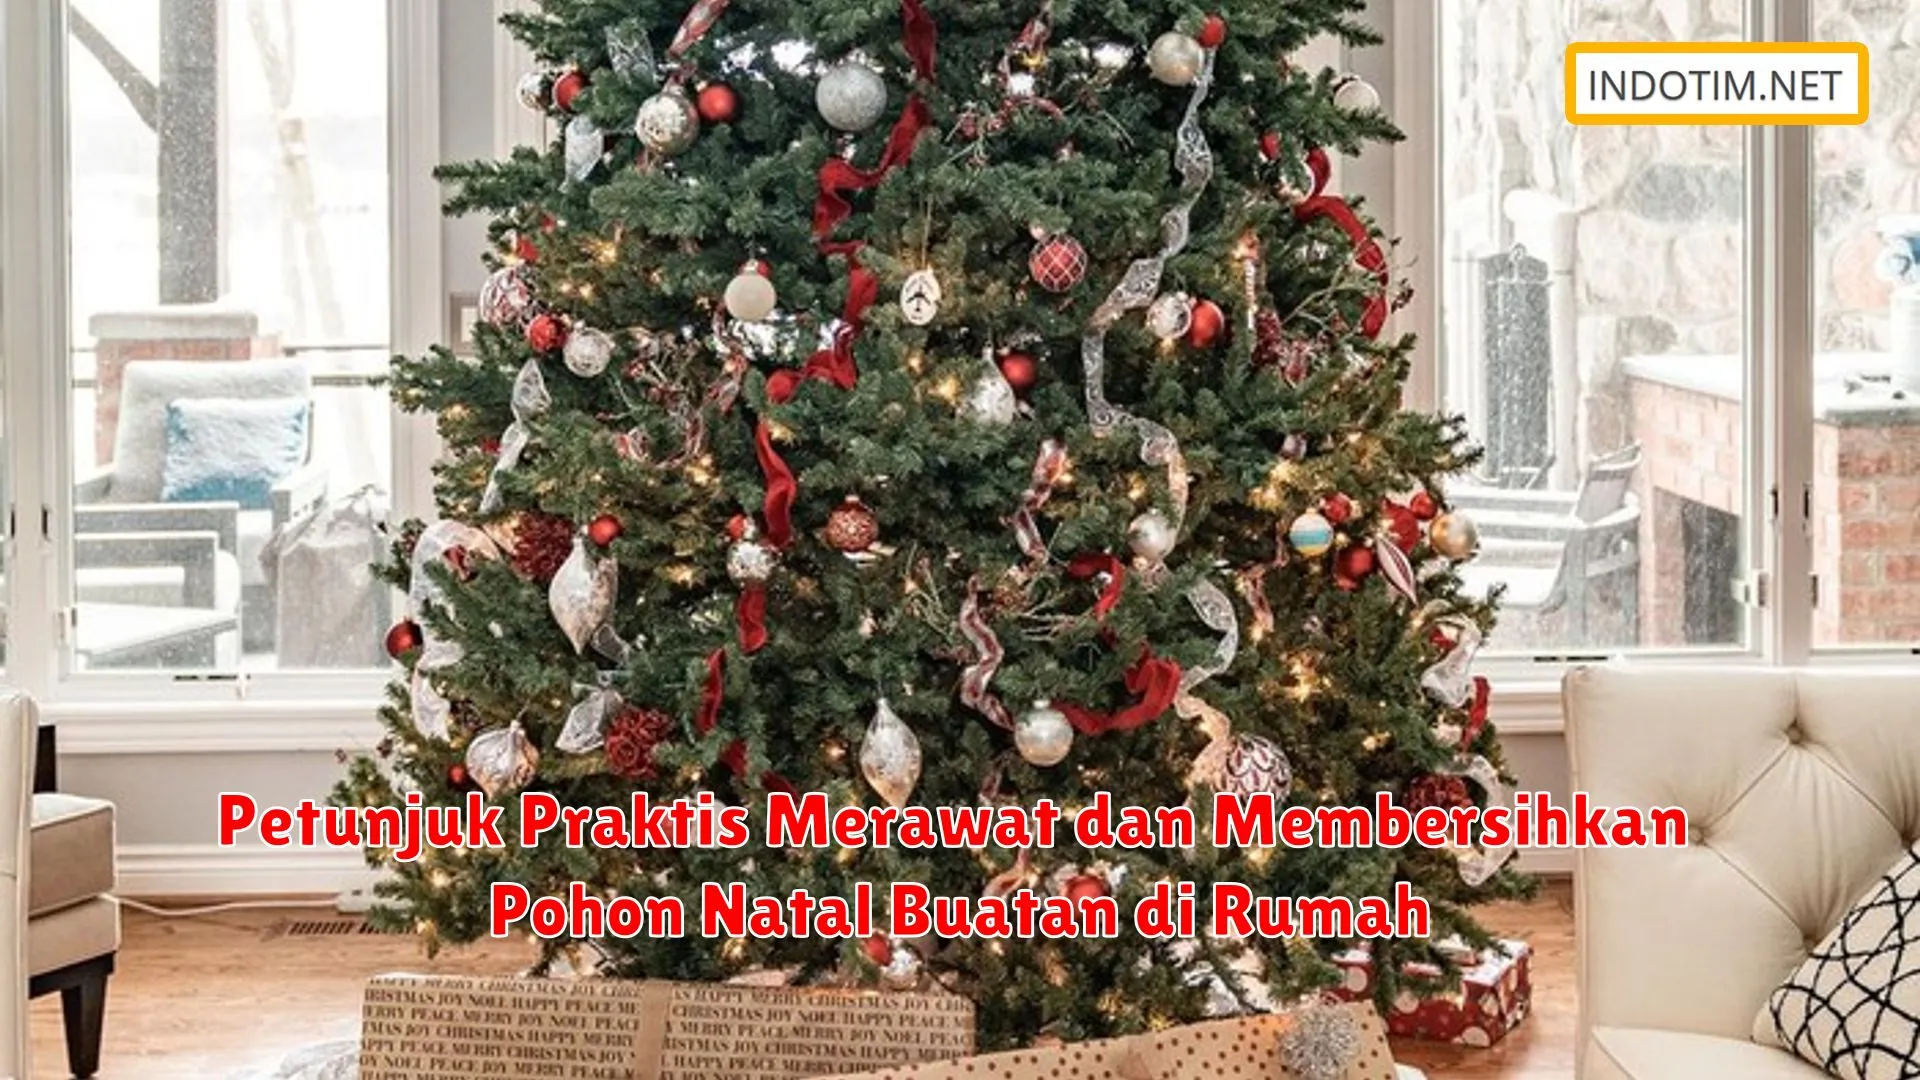 Petunjuk Praktis Merawat dan Membersihkan Pohon Natal Buatan di Rumah